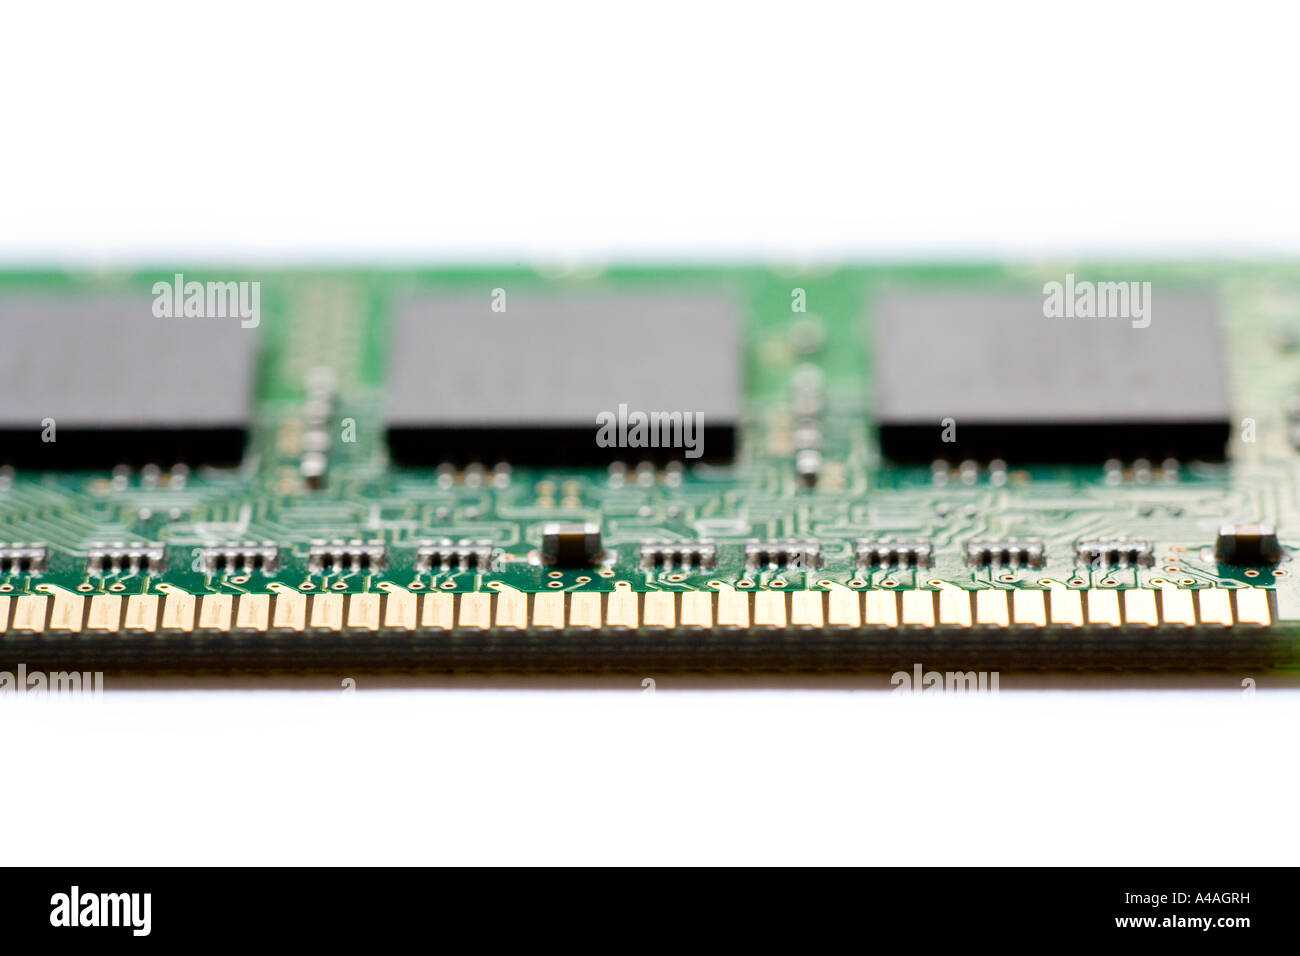 512mb PC-RAM-Speicher-Chip auf weißem Hintergrund Stockfoto